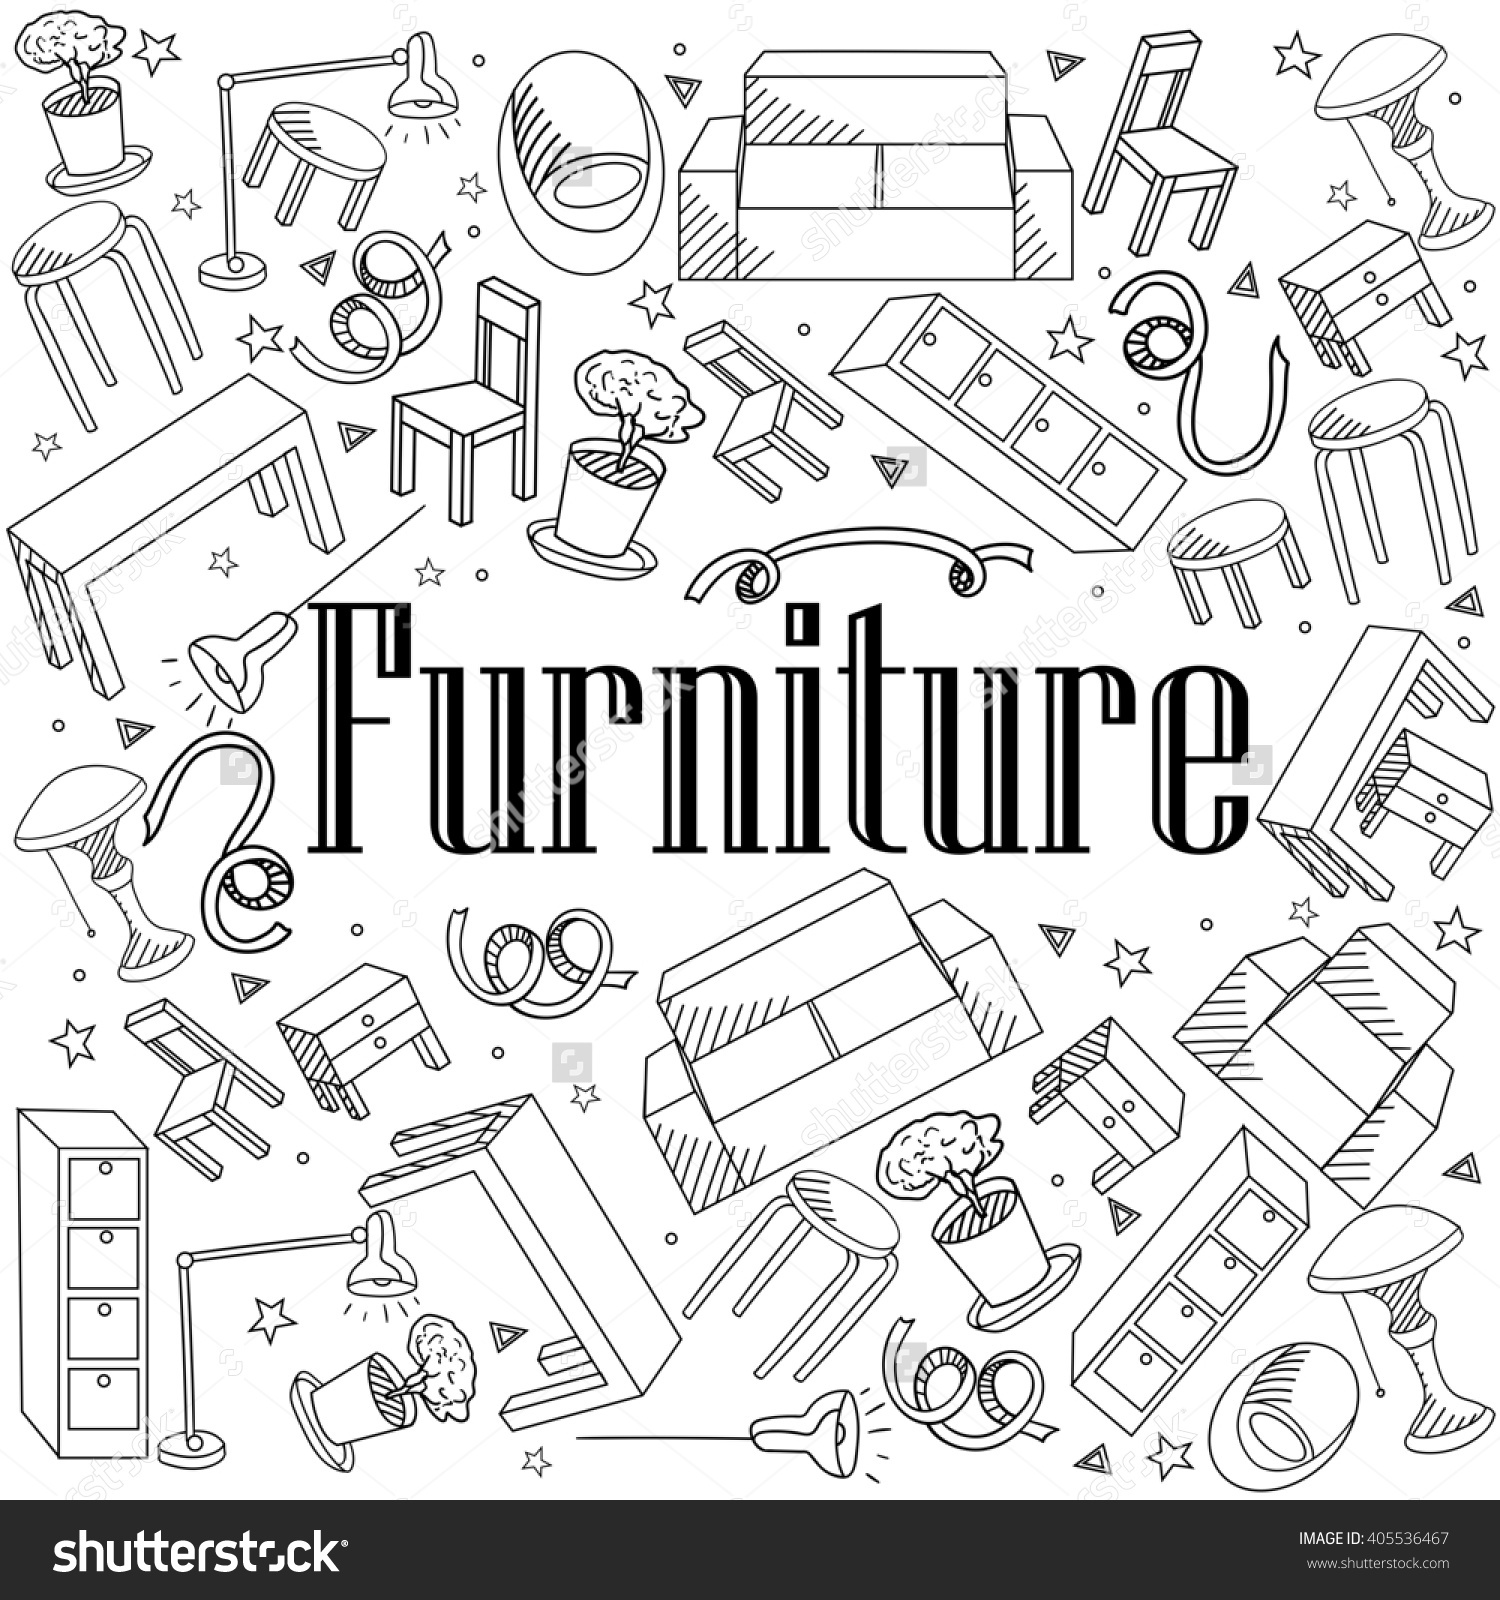 Furniture coloring #3, Download drawings